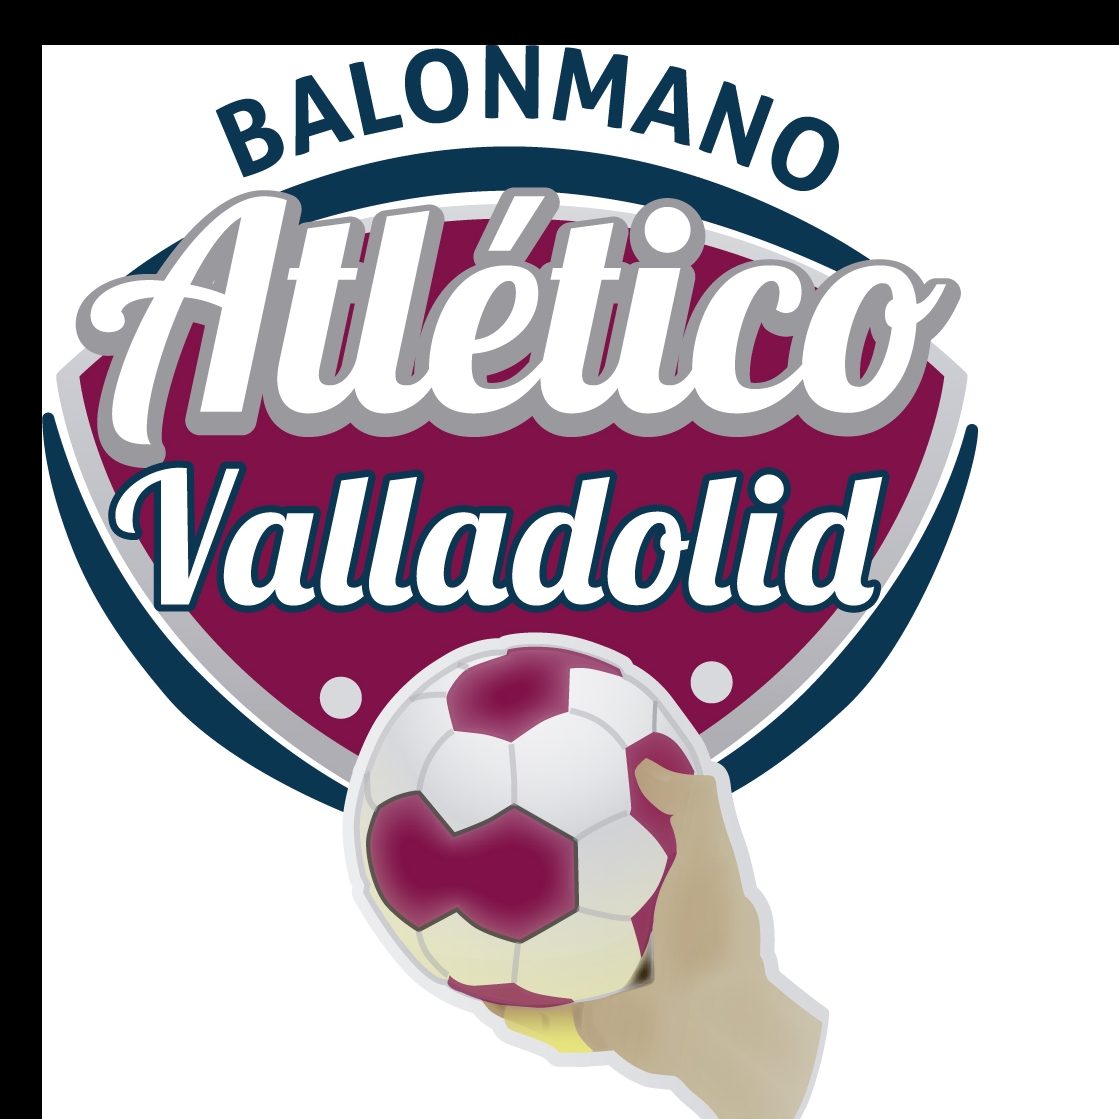 C.D. BALONMANO ATLETICO VALLADOLID